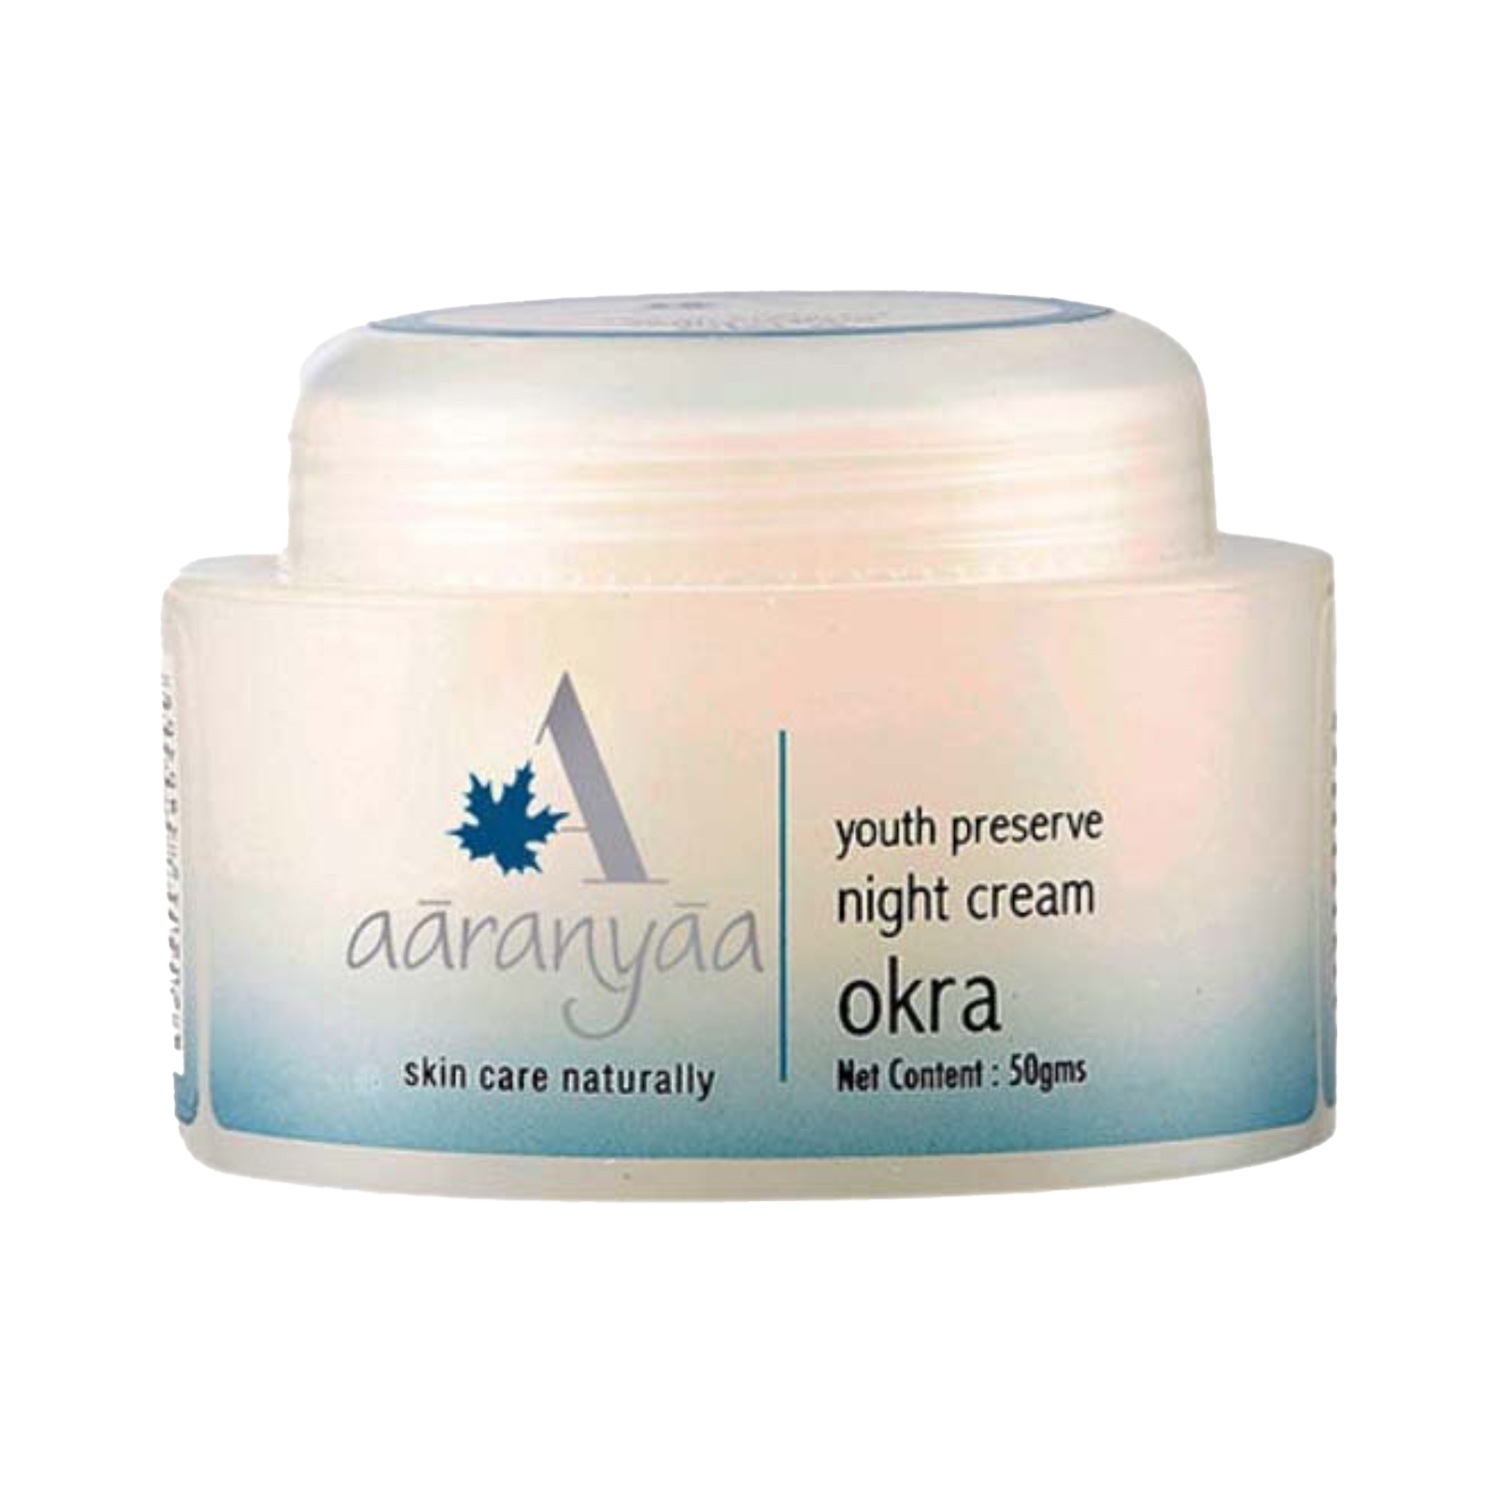 Aaranyaa | Aaranyaa Youth Preserve Okra Night Cream (50g)